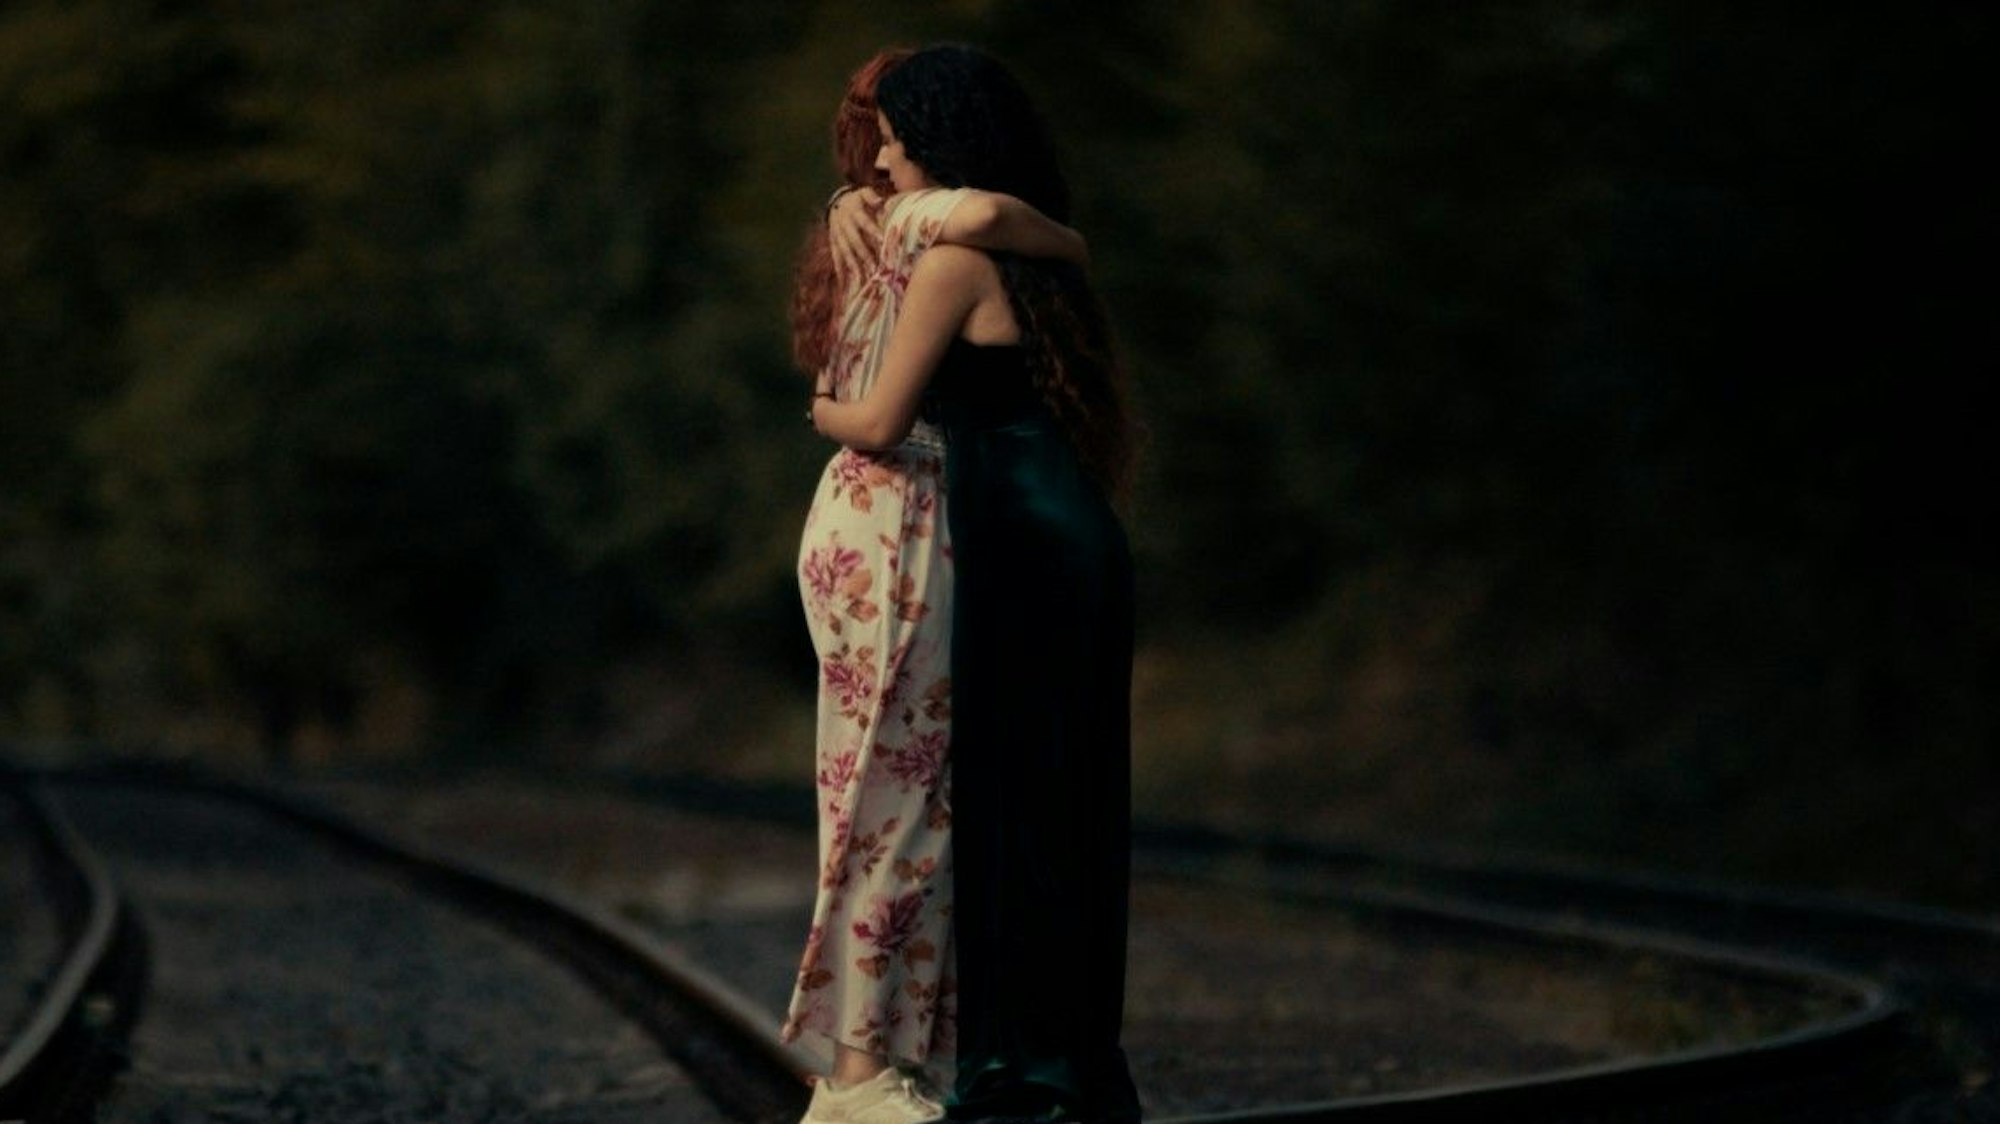 Zwei junge Frauen stehen auf Bahngleisen und umarmen sich.